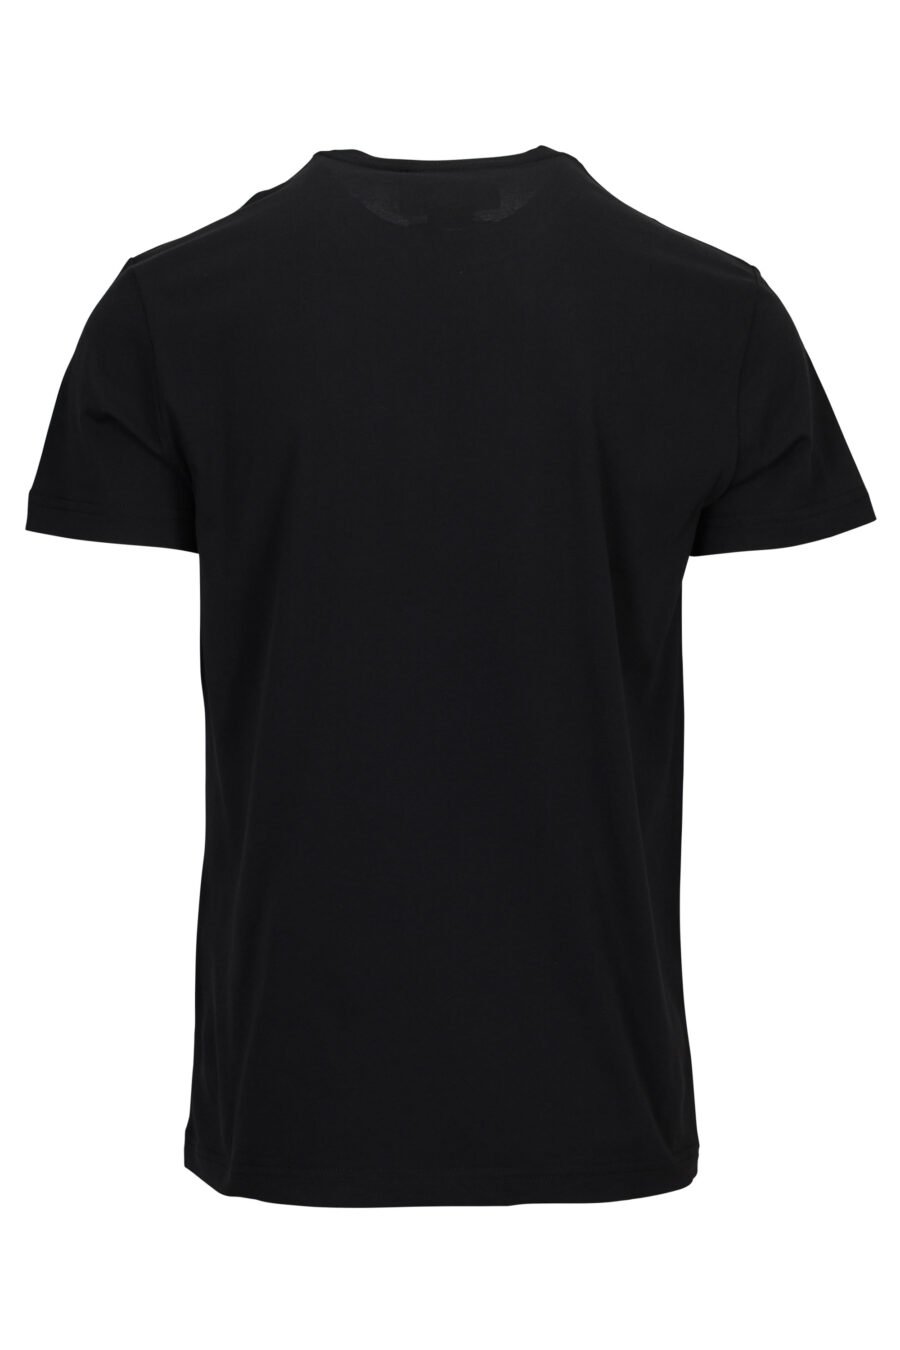 Schwarzes T-Shirt mit barockem Aquarell-Maxilogo - 8052019589535 1